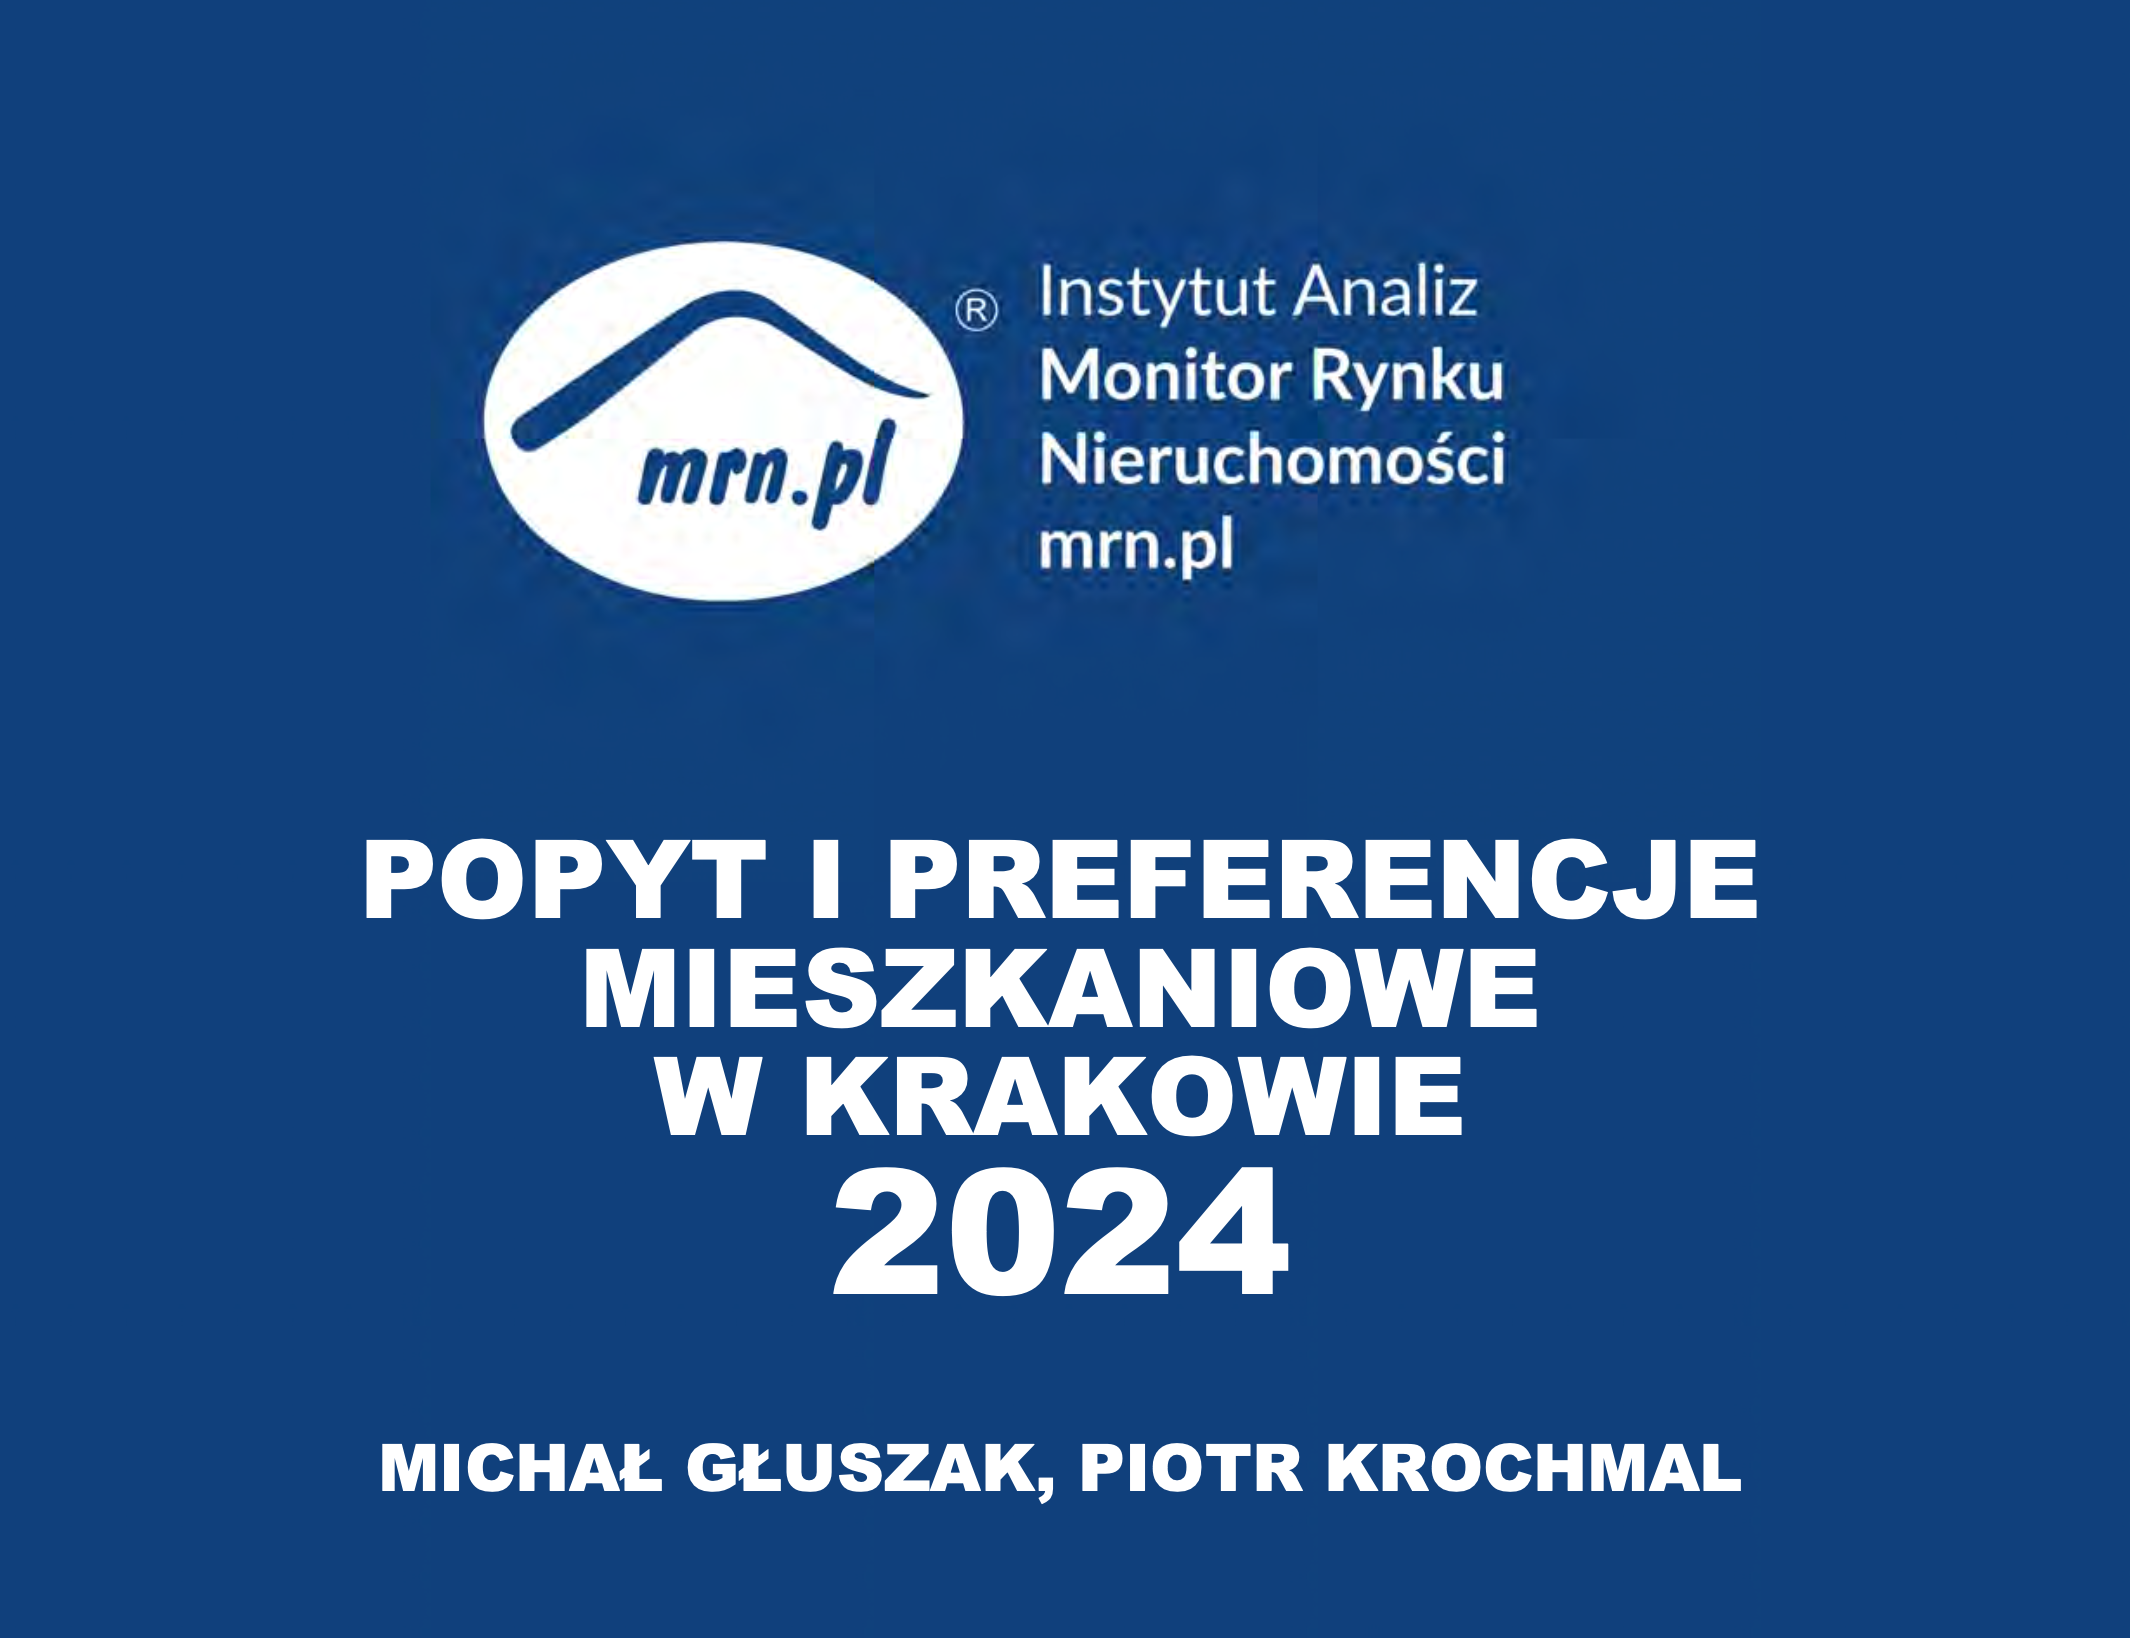 Popyt i preferencje mieszkaniowe w Krakowie 2024